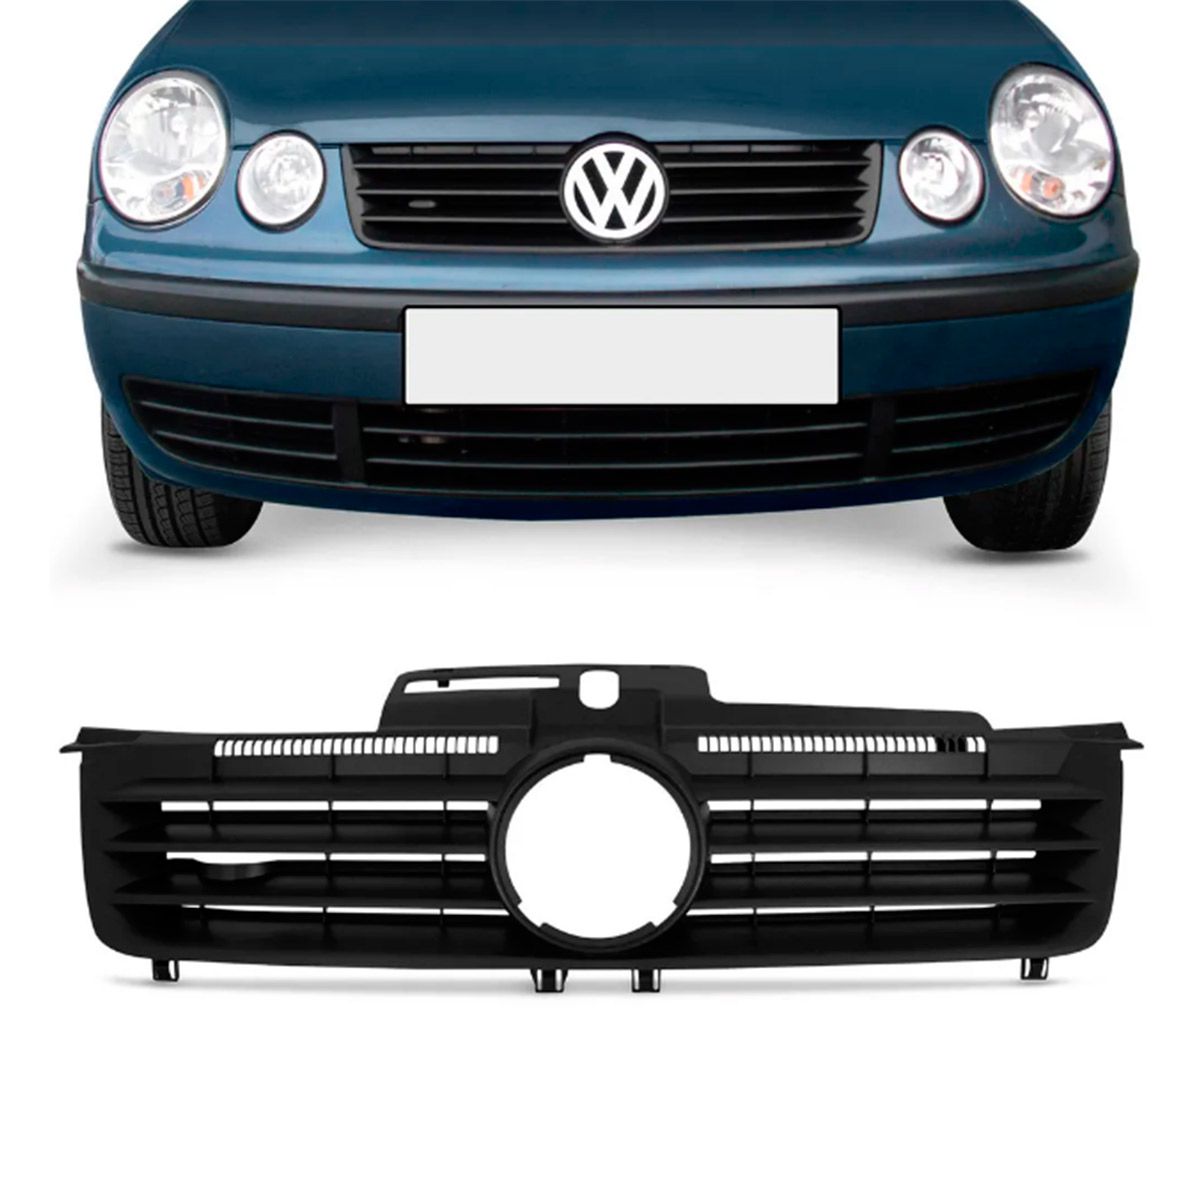 Grade Dianteira Volkswagen Polo 2001 à 2005 Sem Emblema